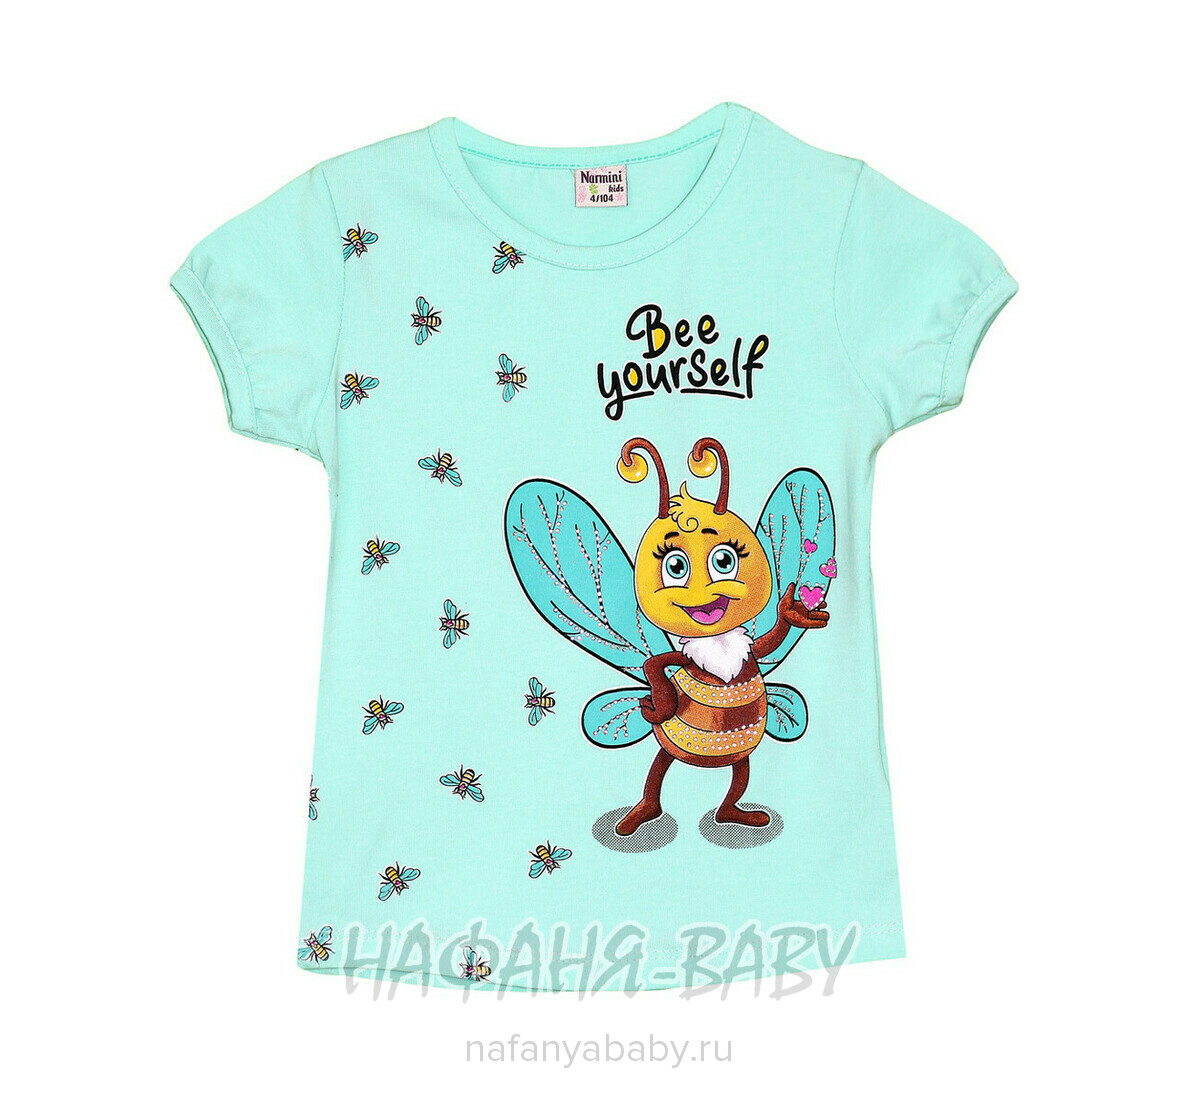 Детская футболка NARMINI, купить в интернет магазине Нафаня. арт: 7601, цвет аквамариновый